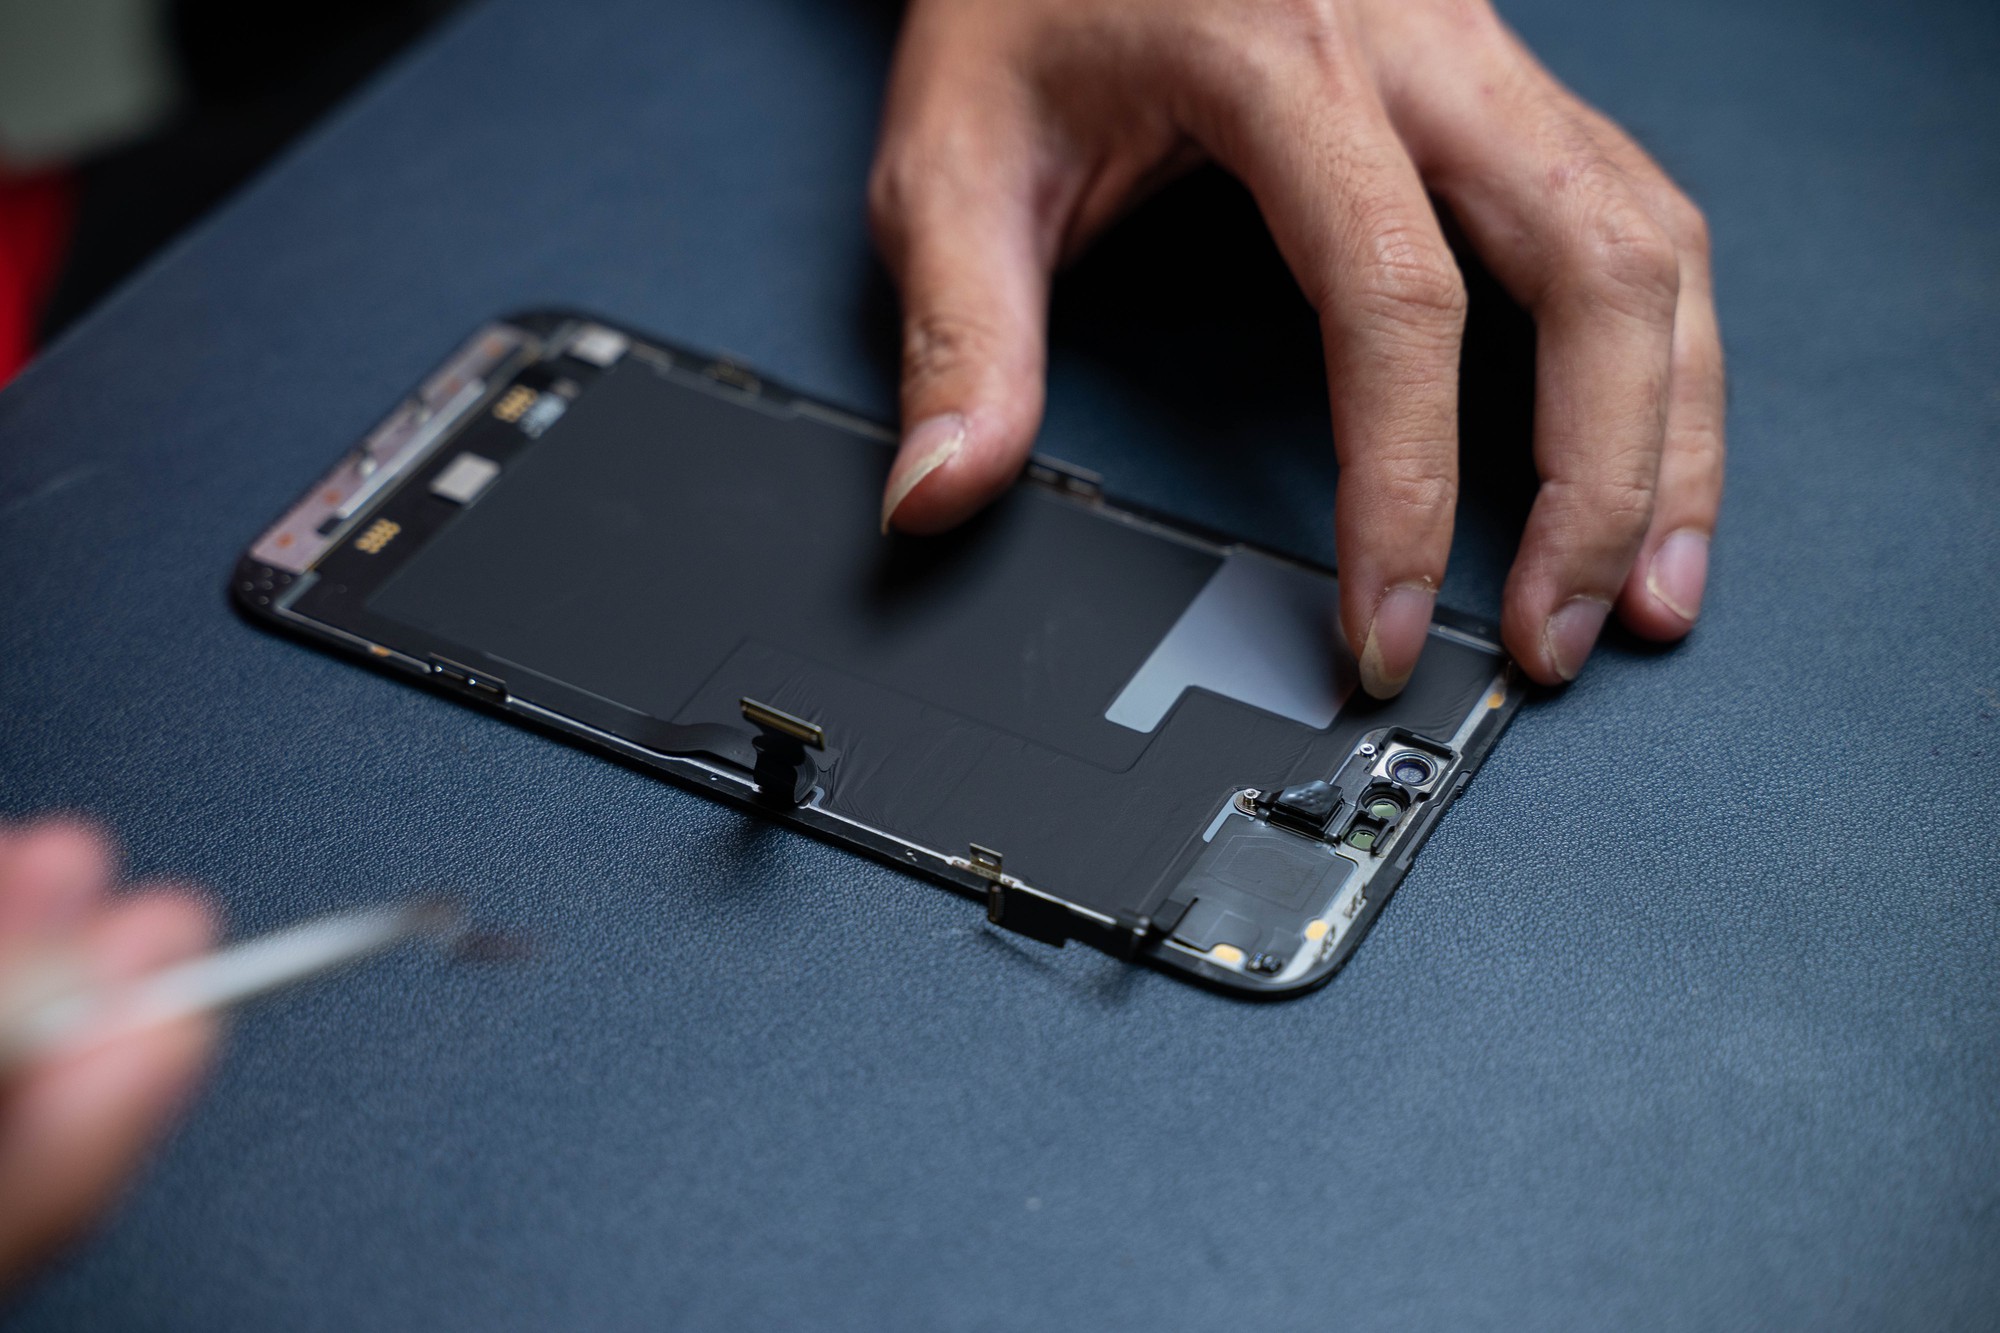 Tháo tung iPhone 14 Pro Max phát hiện chi tiết dễ gặp lỗi và thông số Apple chưa công bố - Ảnh 6.